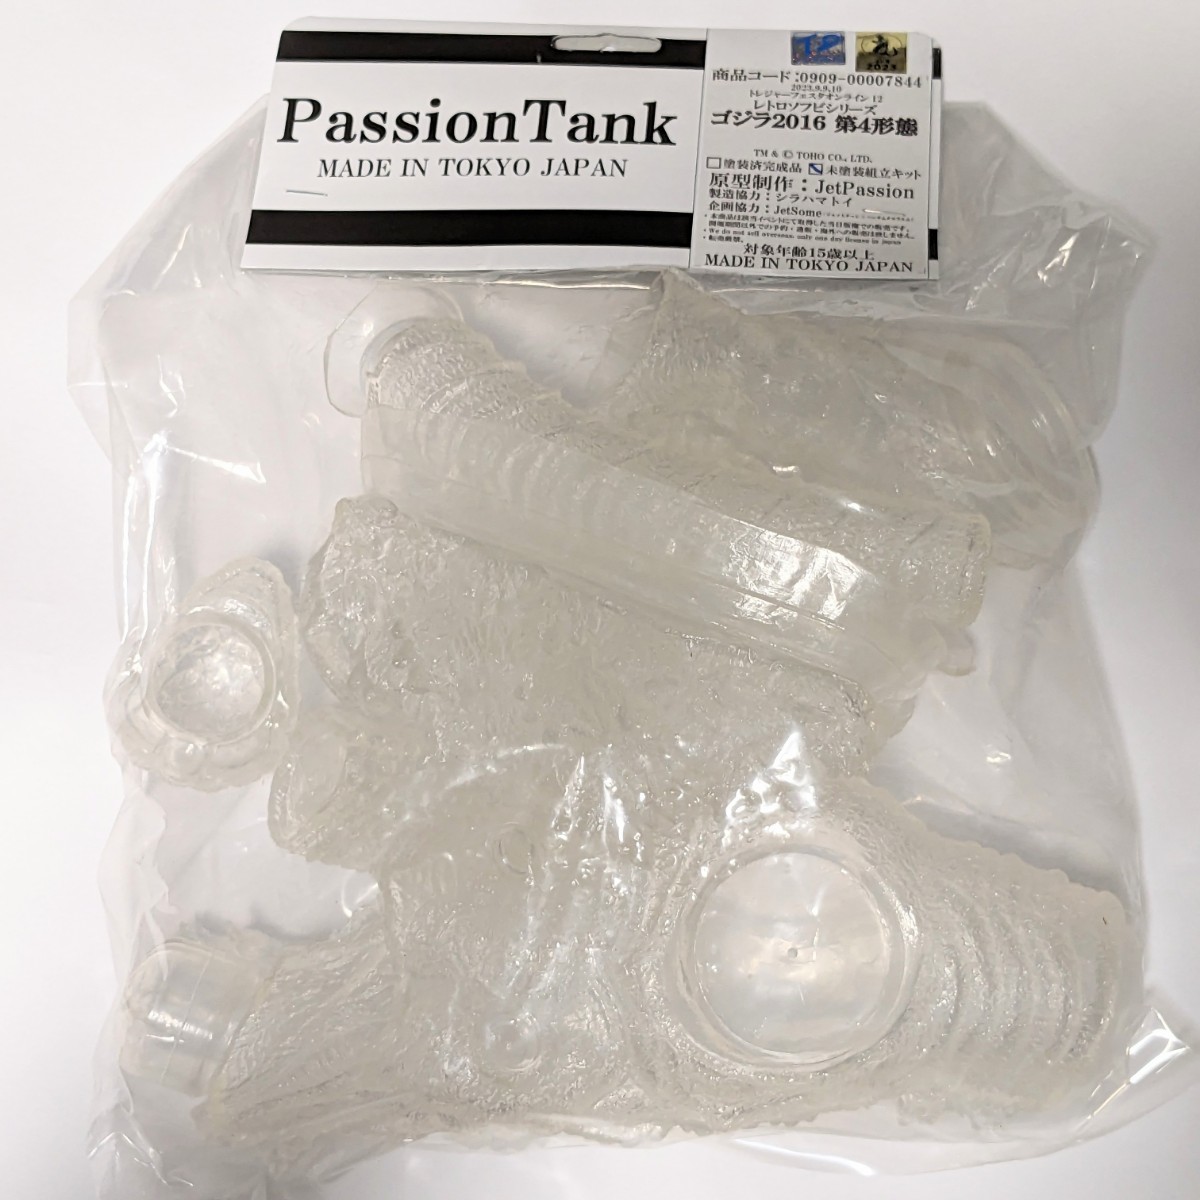 PassionTank ゴジラ2016 第4形態 シン・ゴジラ クリアカラー ソフビ Passion Tank パッションタンク 正規品 未開封新品 _画像8